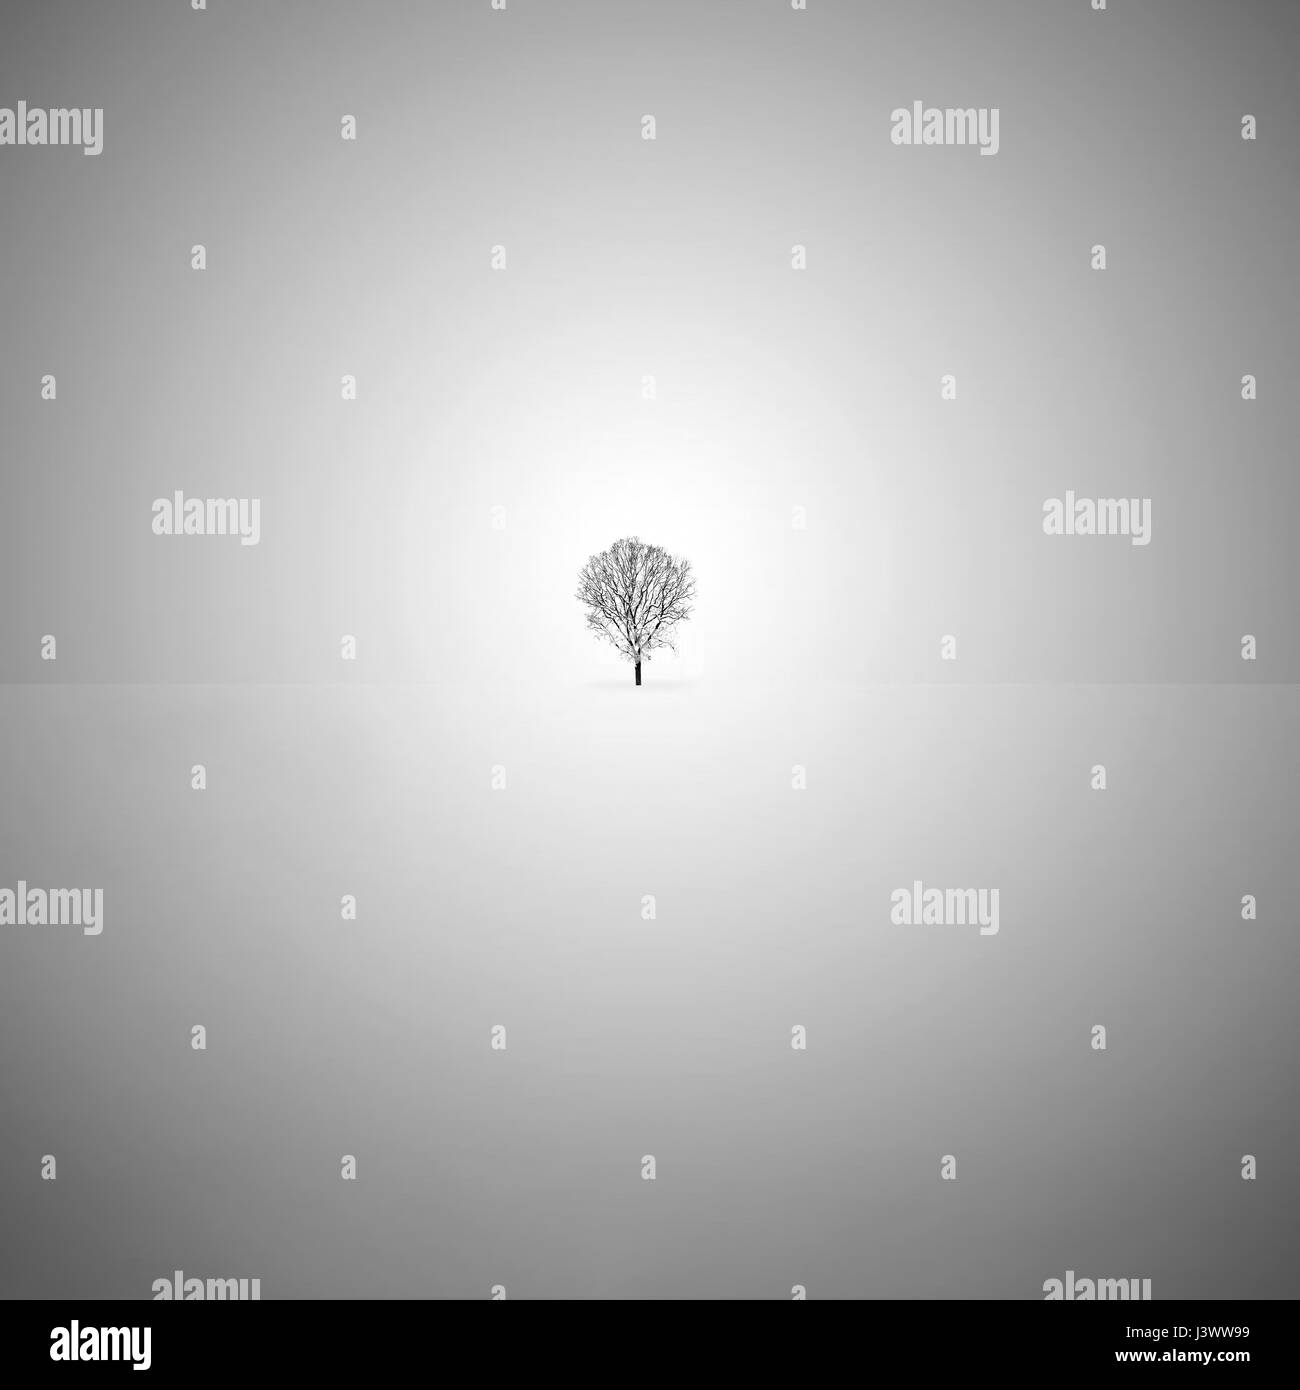 Fine art minimaliste noir et blanc avec un arbre isolé dans la neige. Banque D'Images